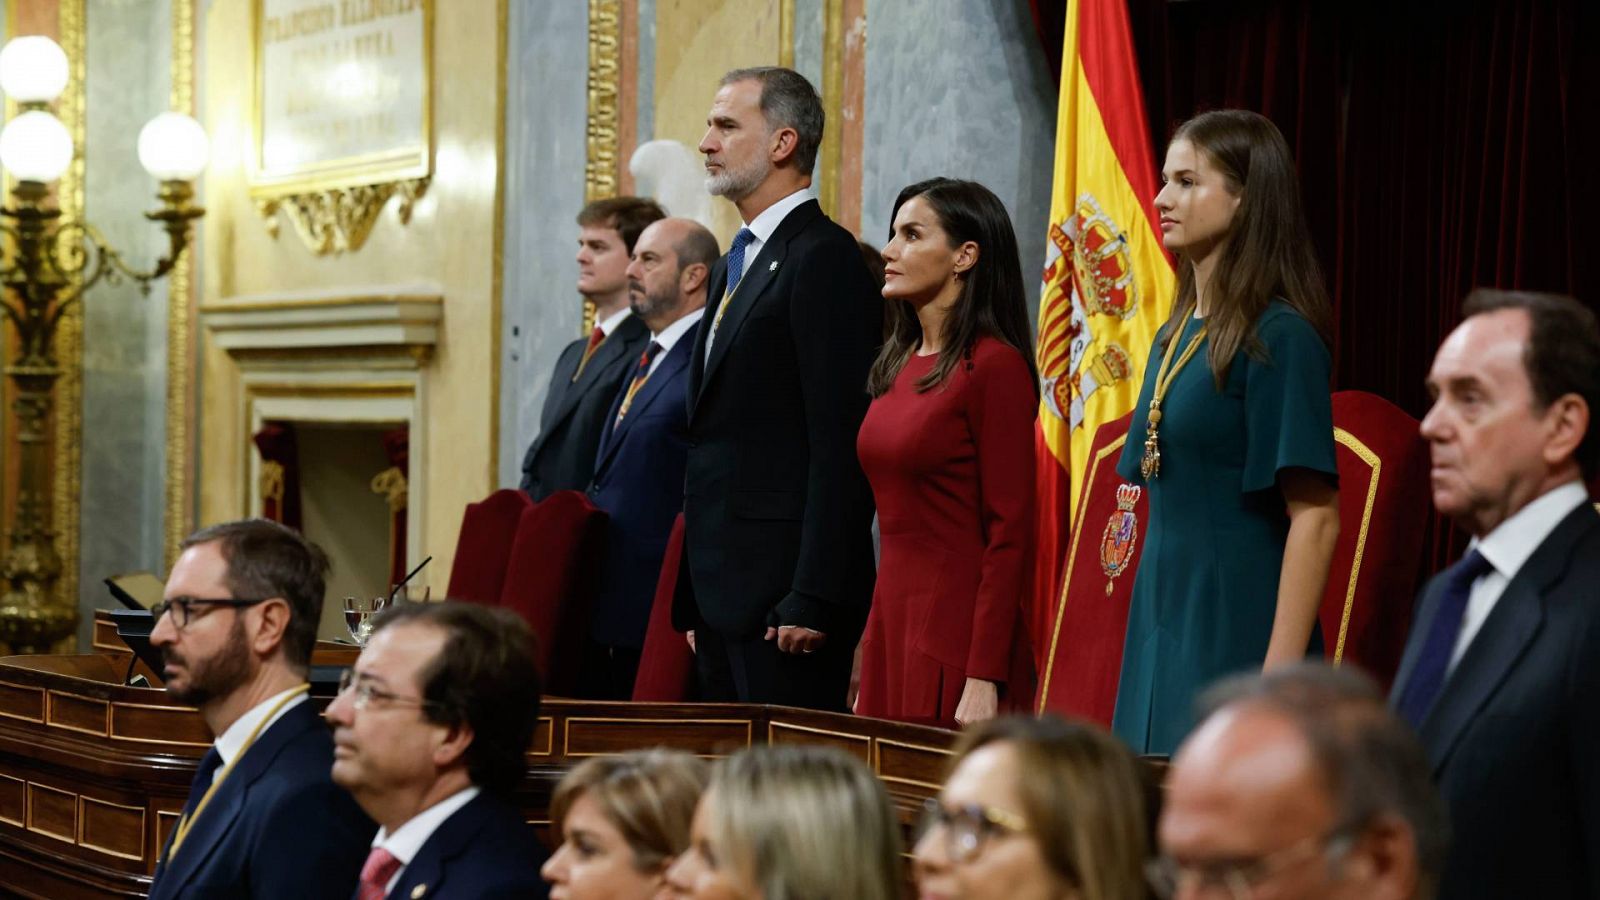 Apertura Cortes: La princesa Leonor de Asturias, la reina Letizia y el rey Felipe VI durante la solemne apertura